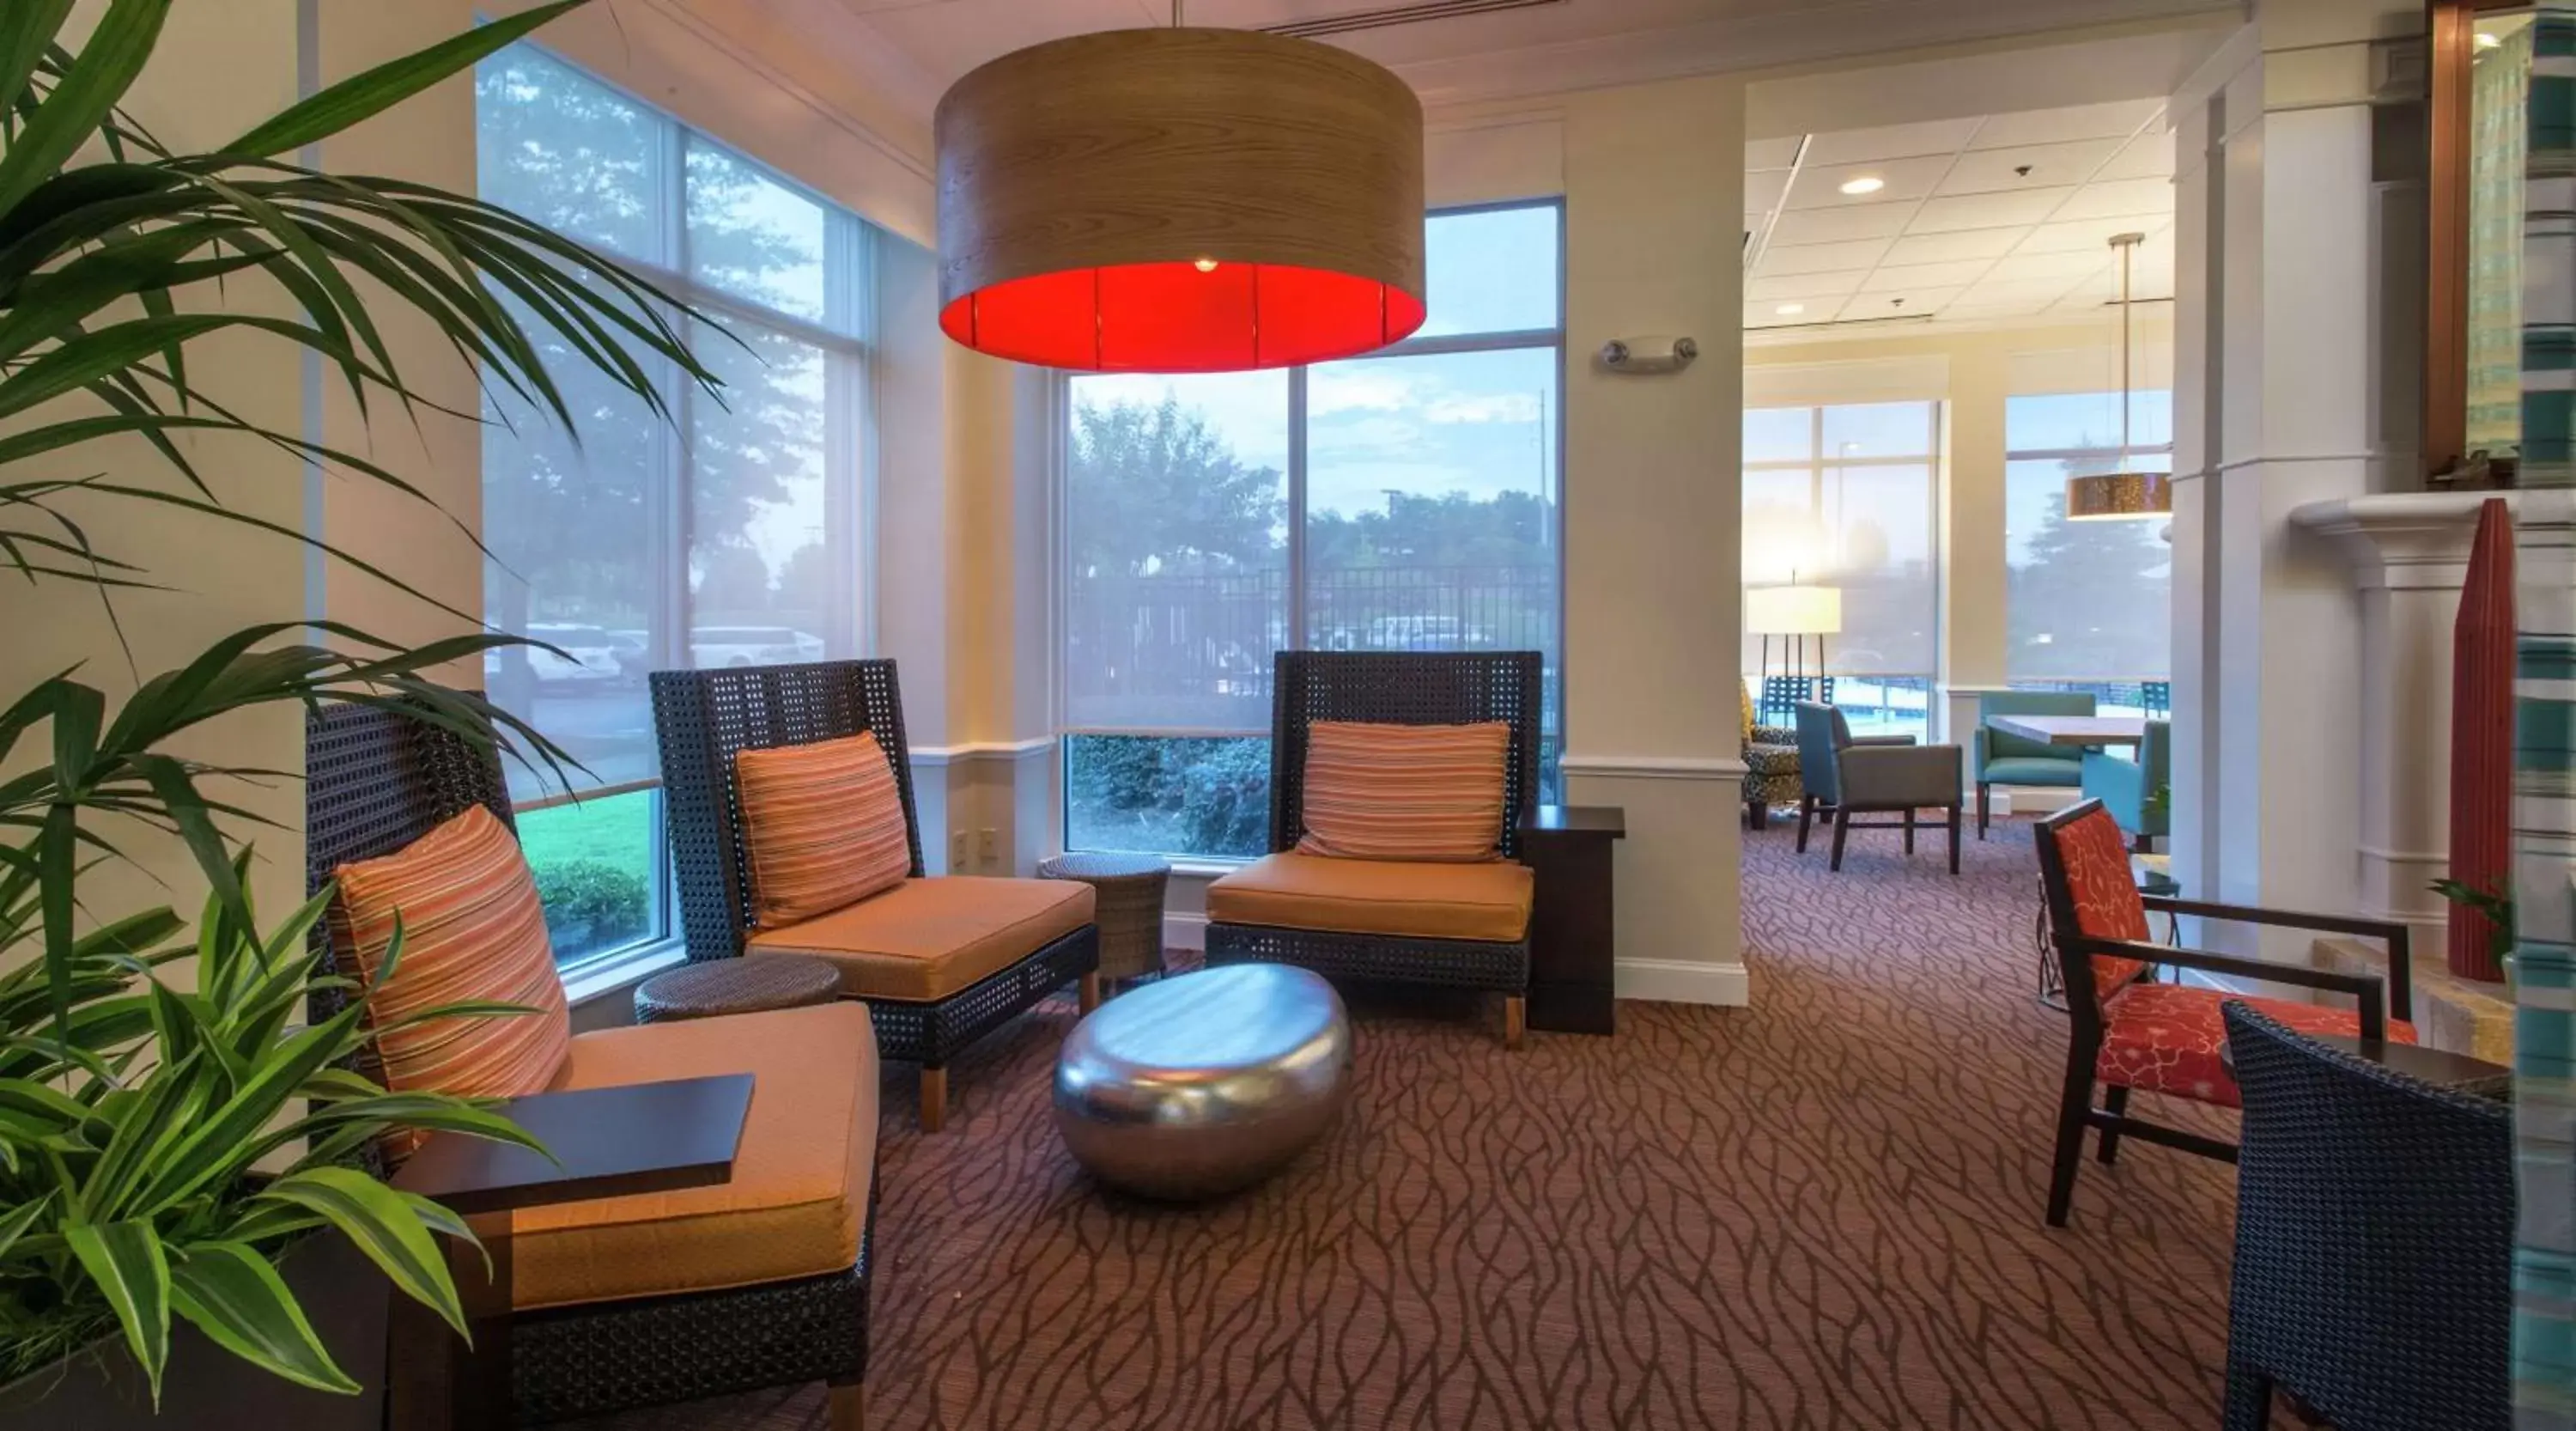 Lobby or reception in Hilton Garden Inn Macon/Mercer University